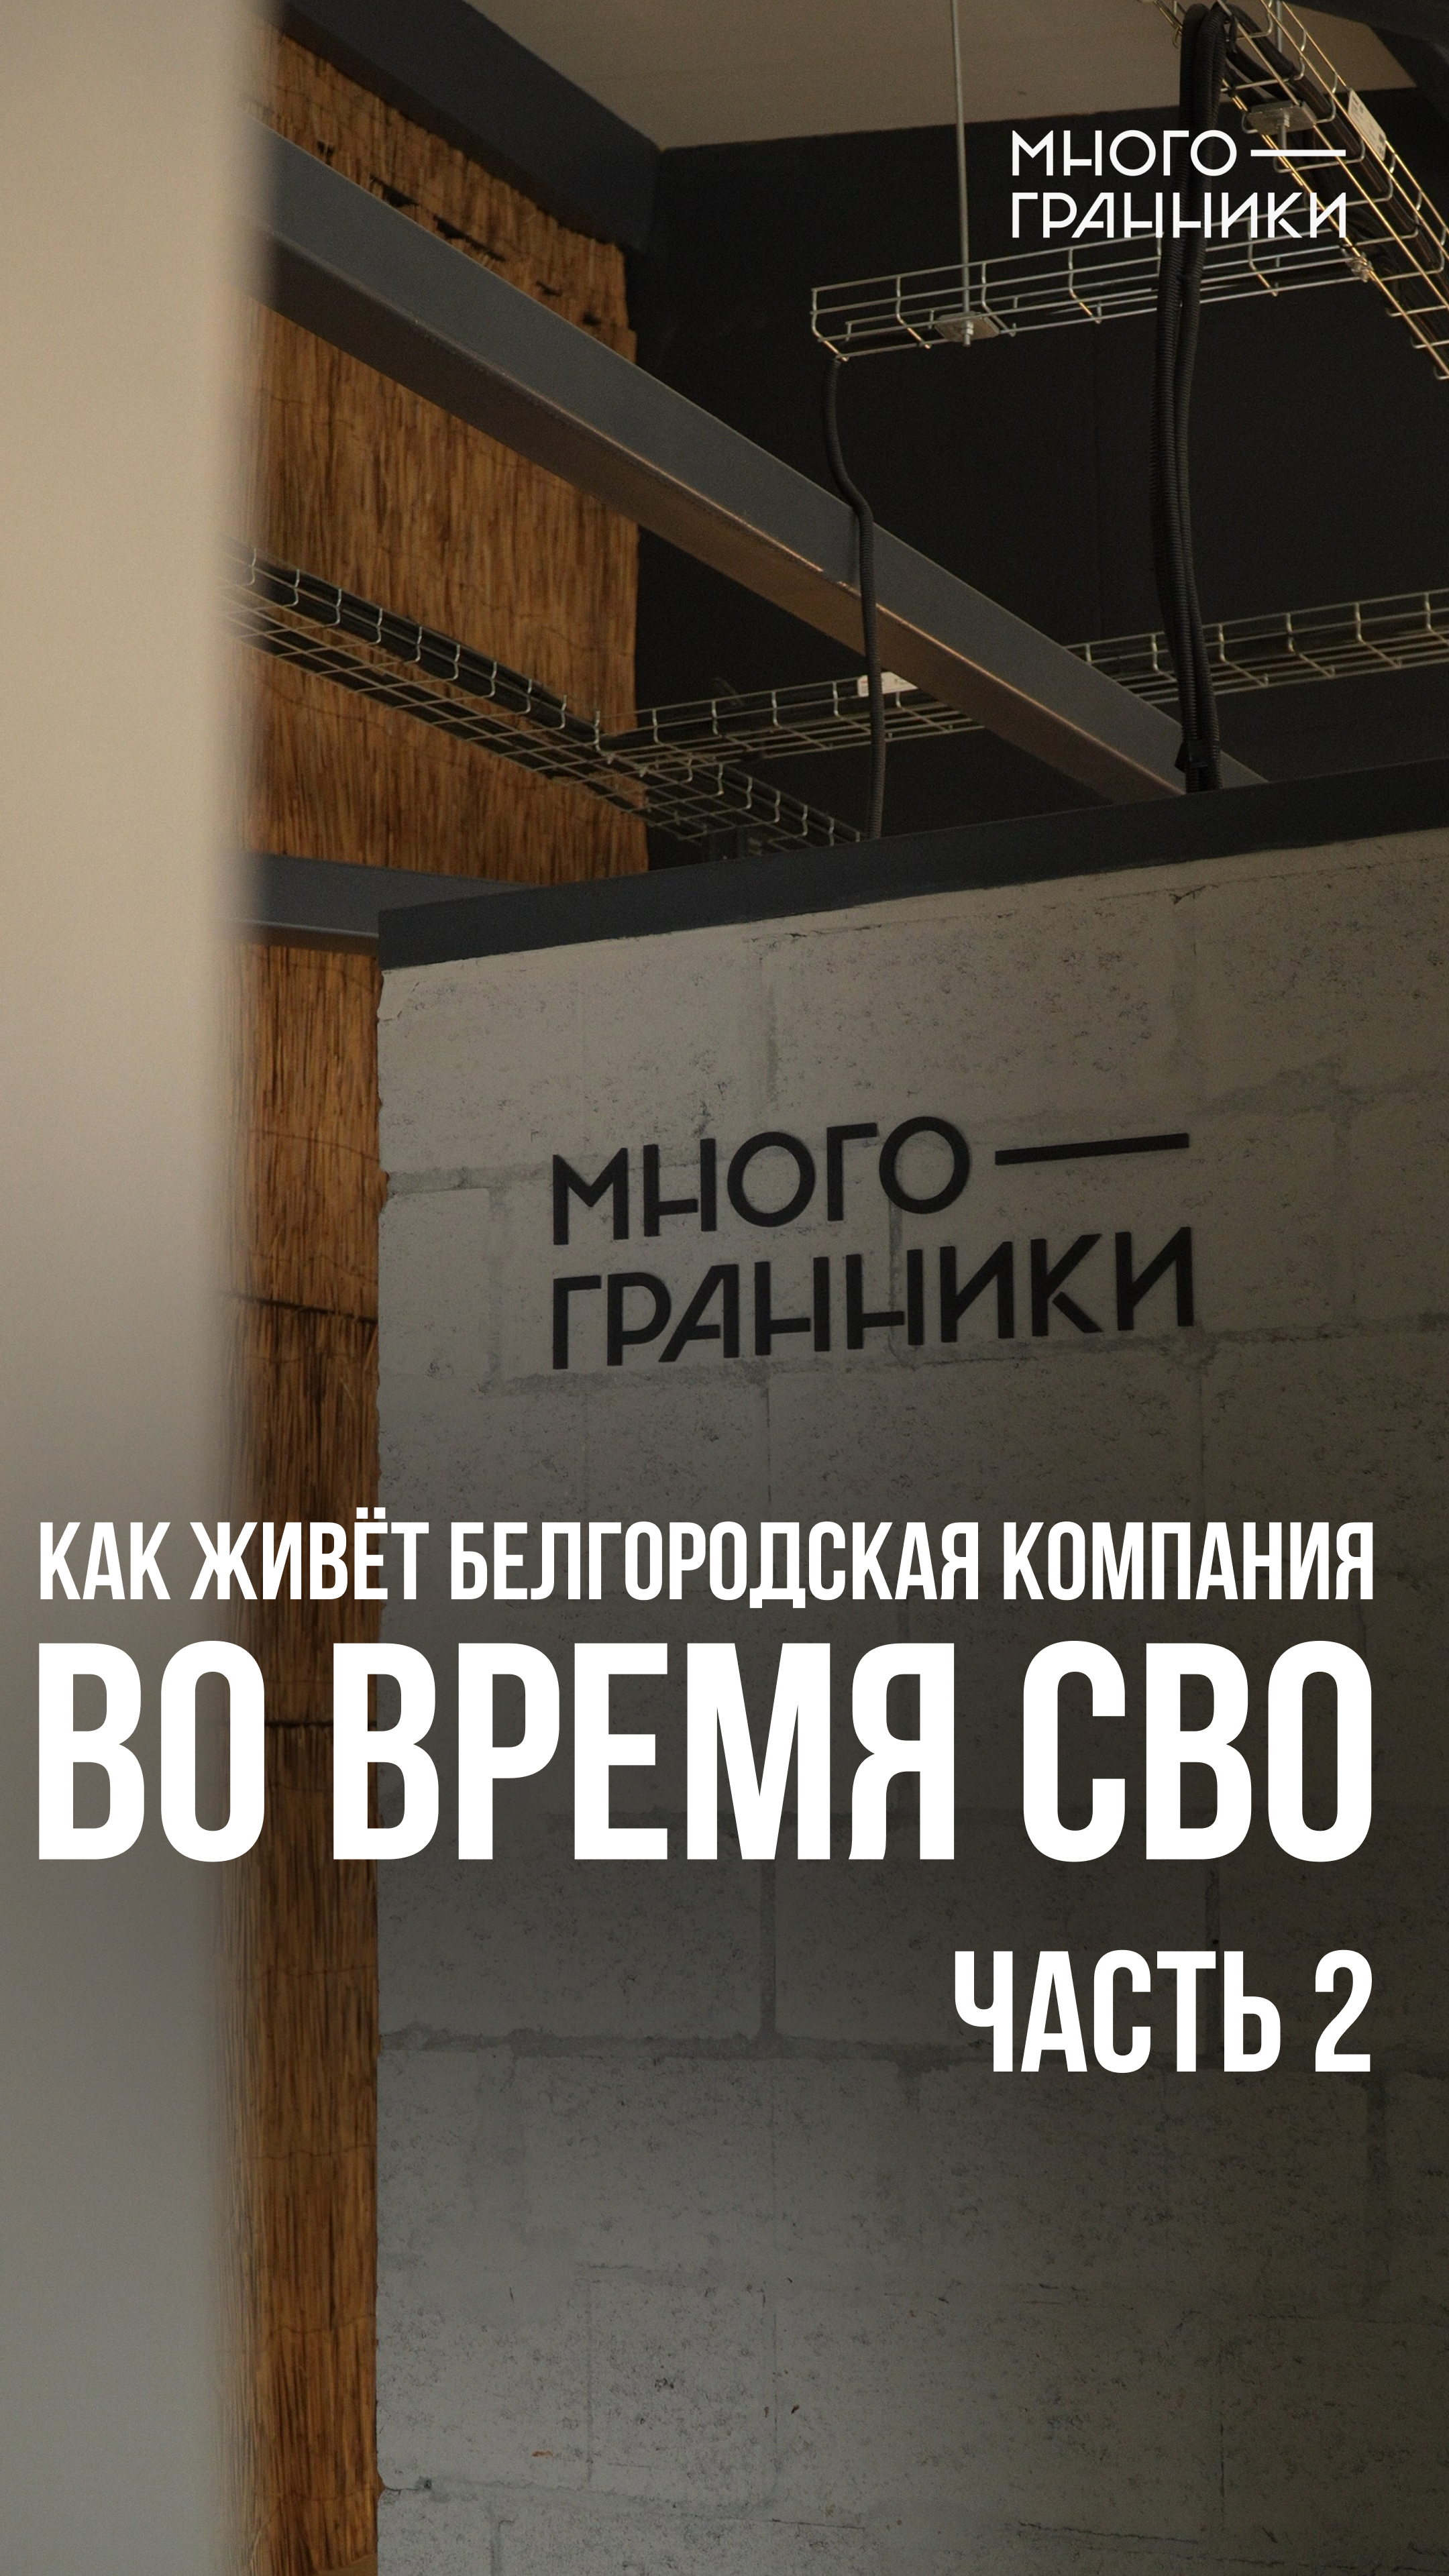 Как живёт белгородская компания во время СВО? Часть 2.